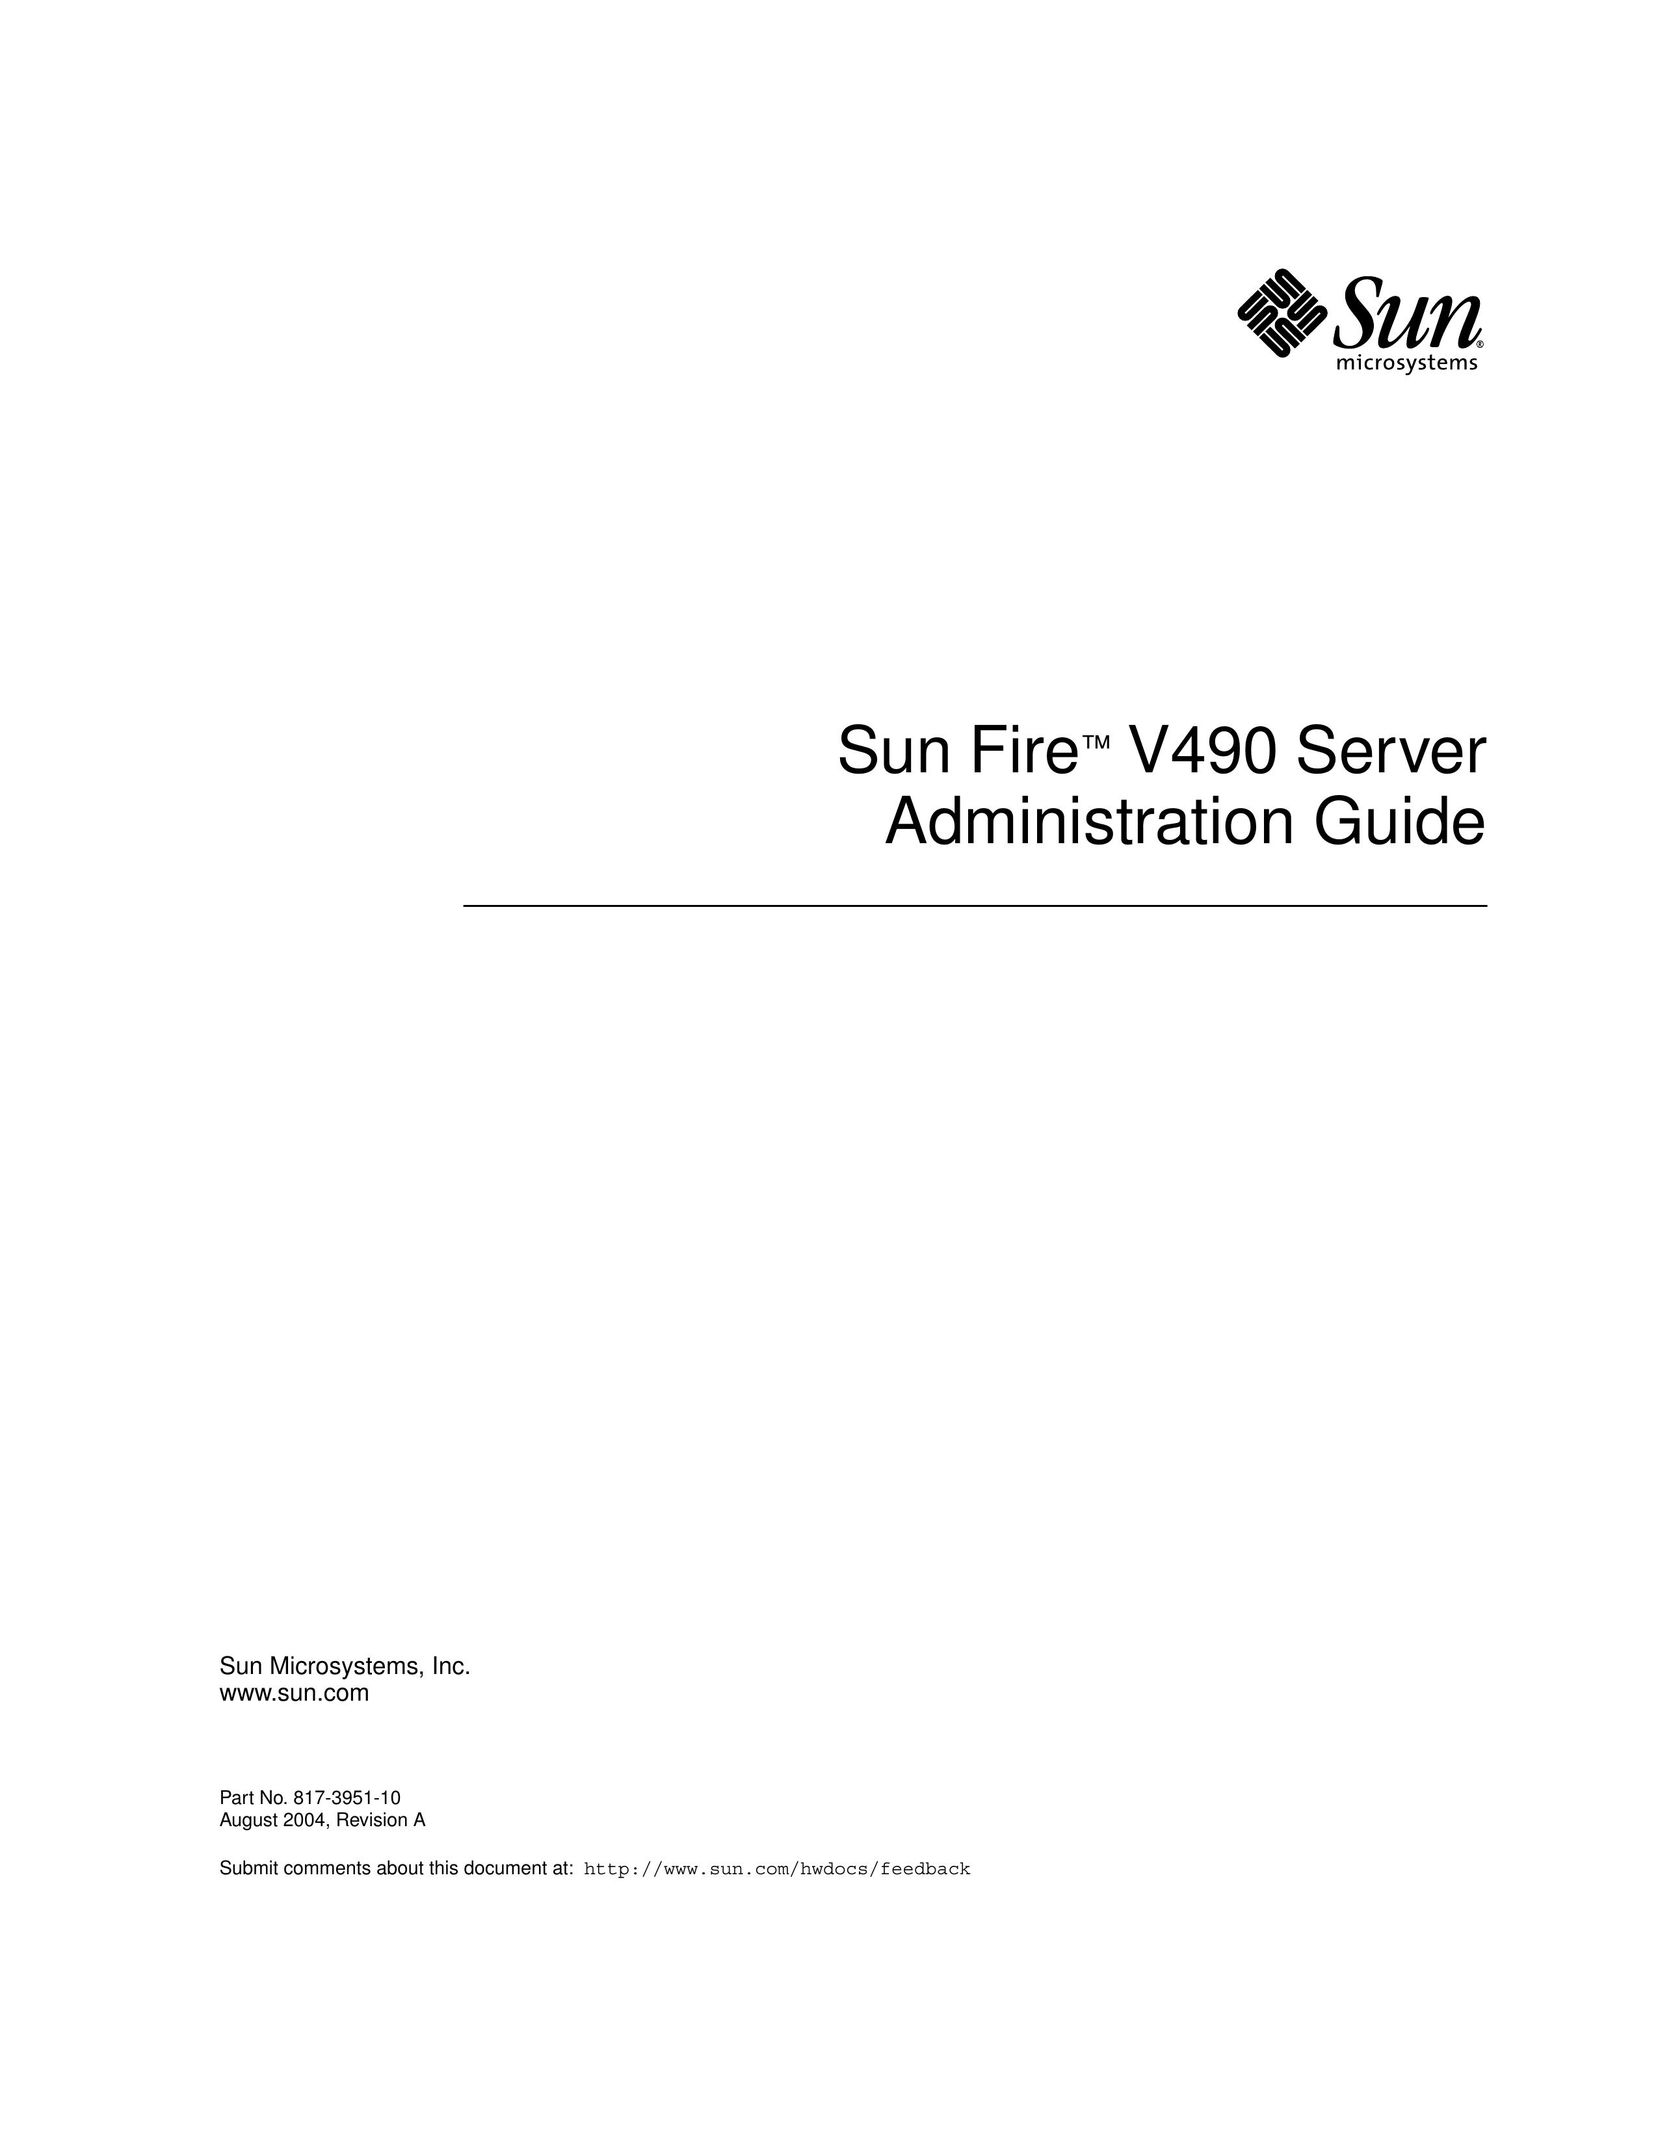 Sun Microsystems V490 Server User Manual